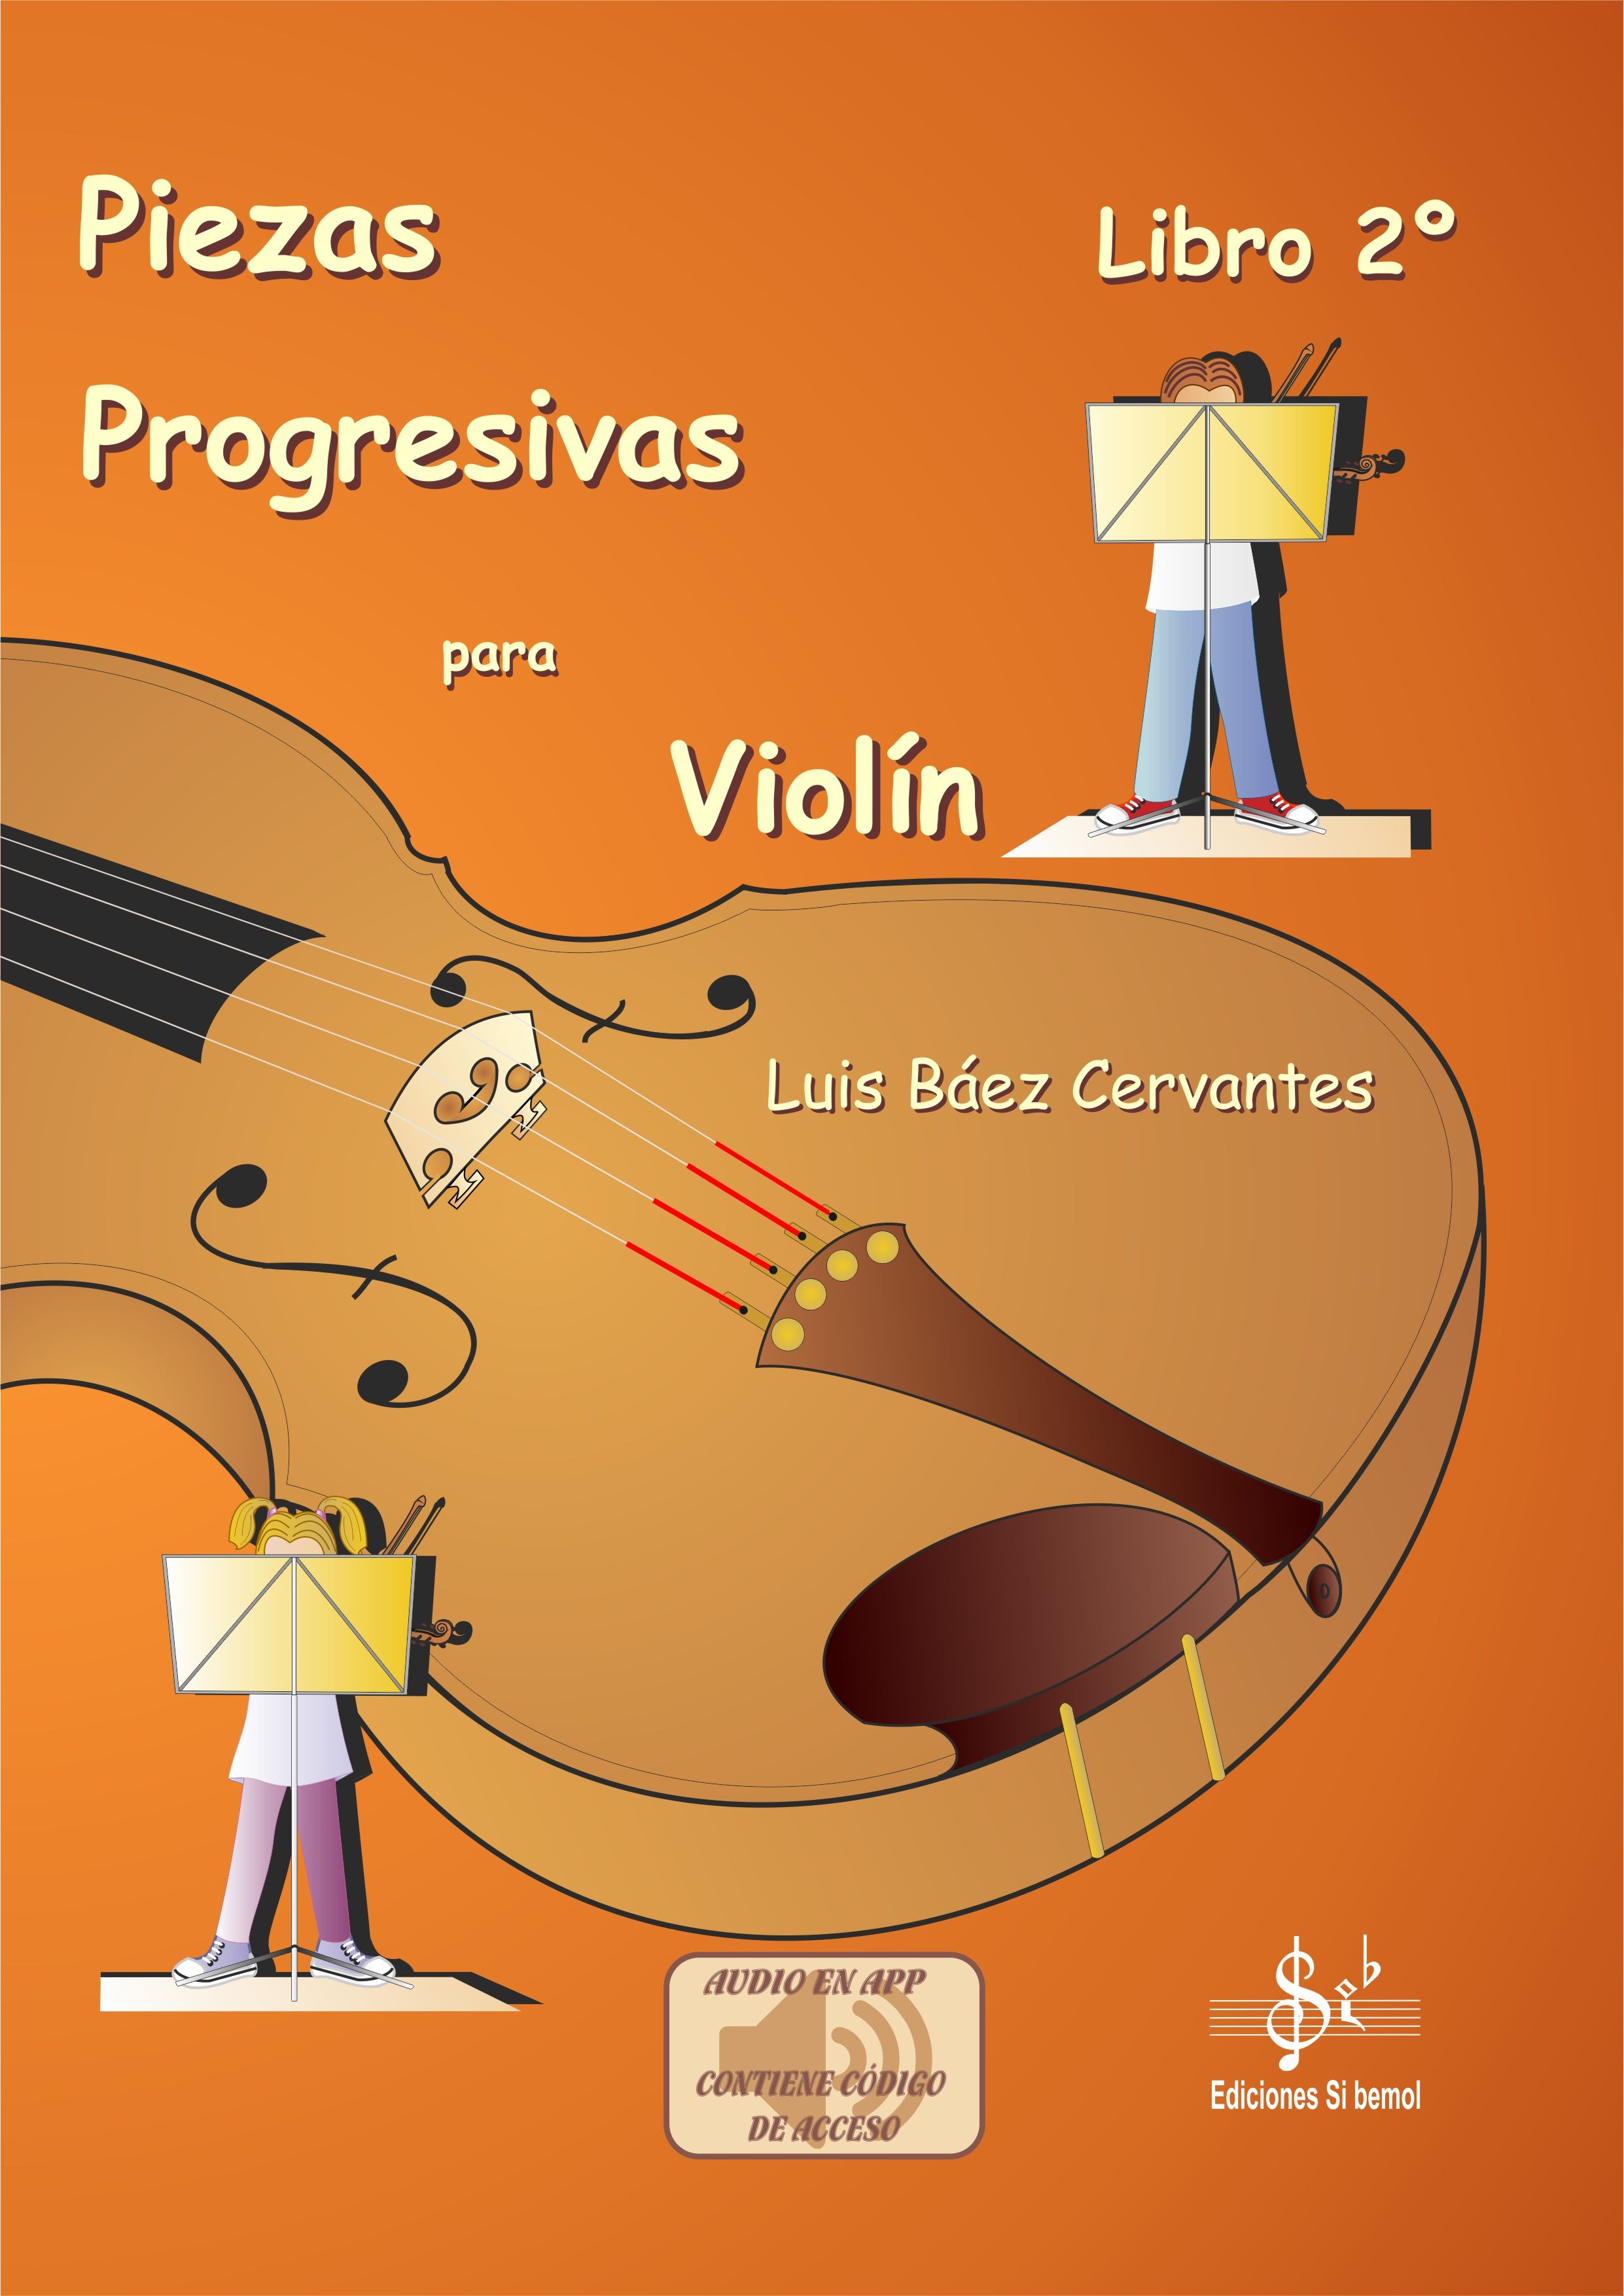 Piezas progresivas para Violín - Libro 2º en APP) - EDICIONES SI BEMOL SL